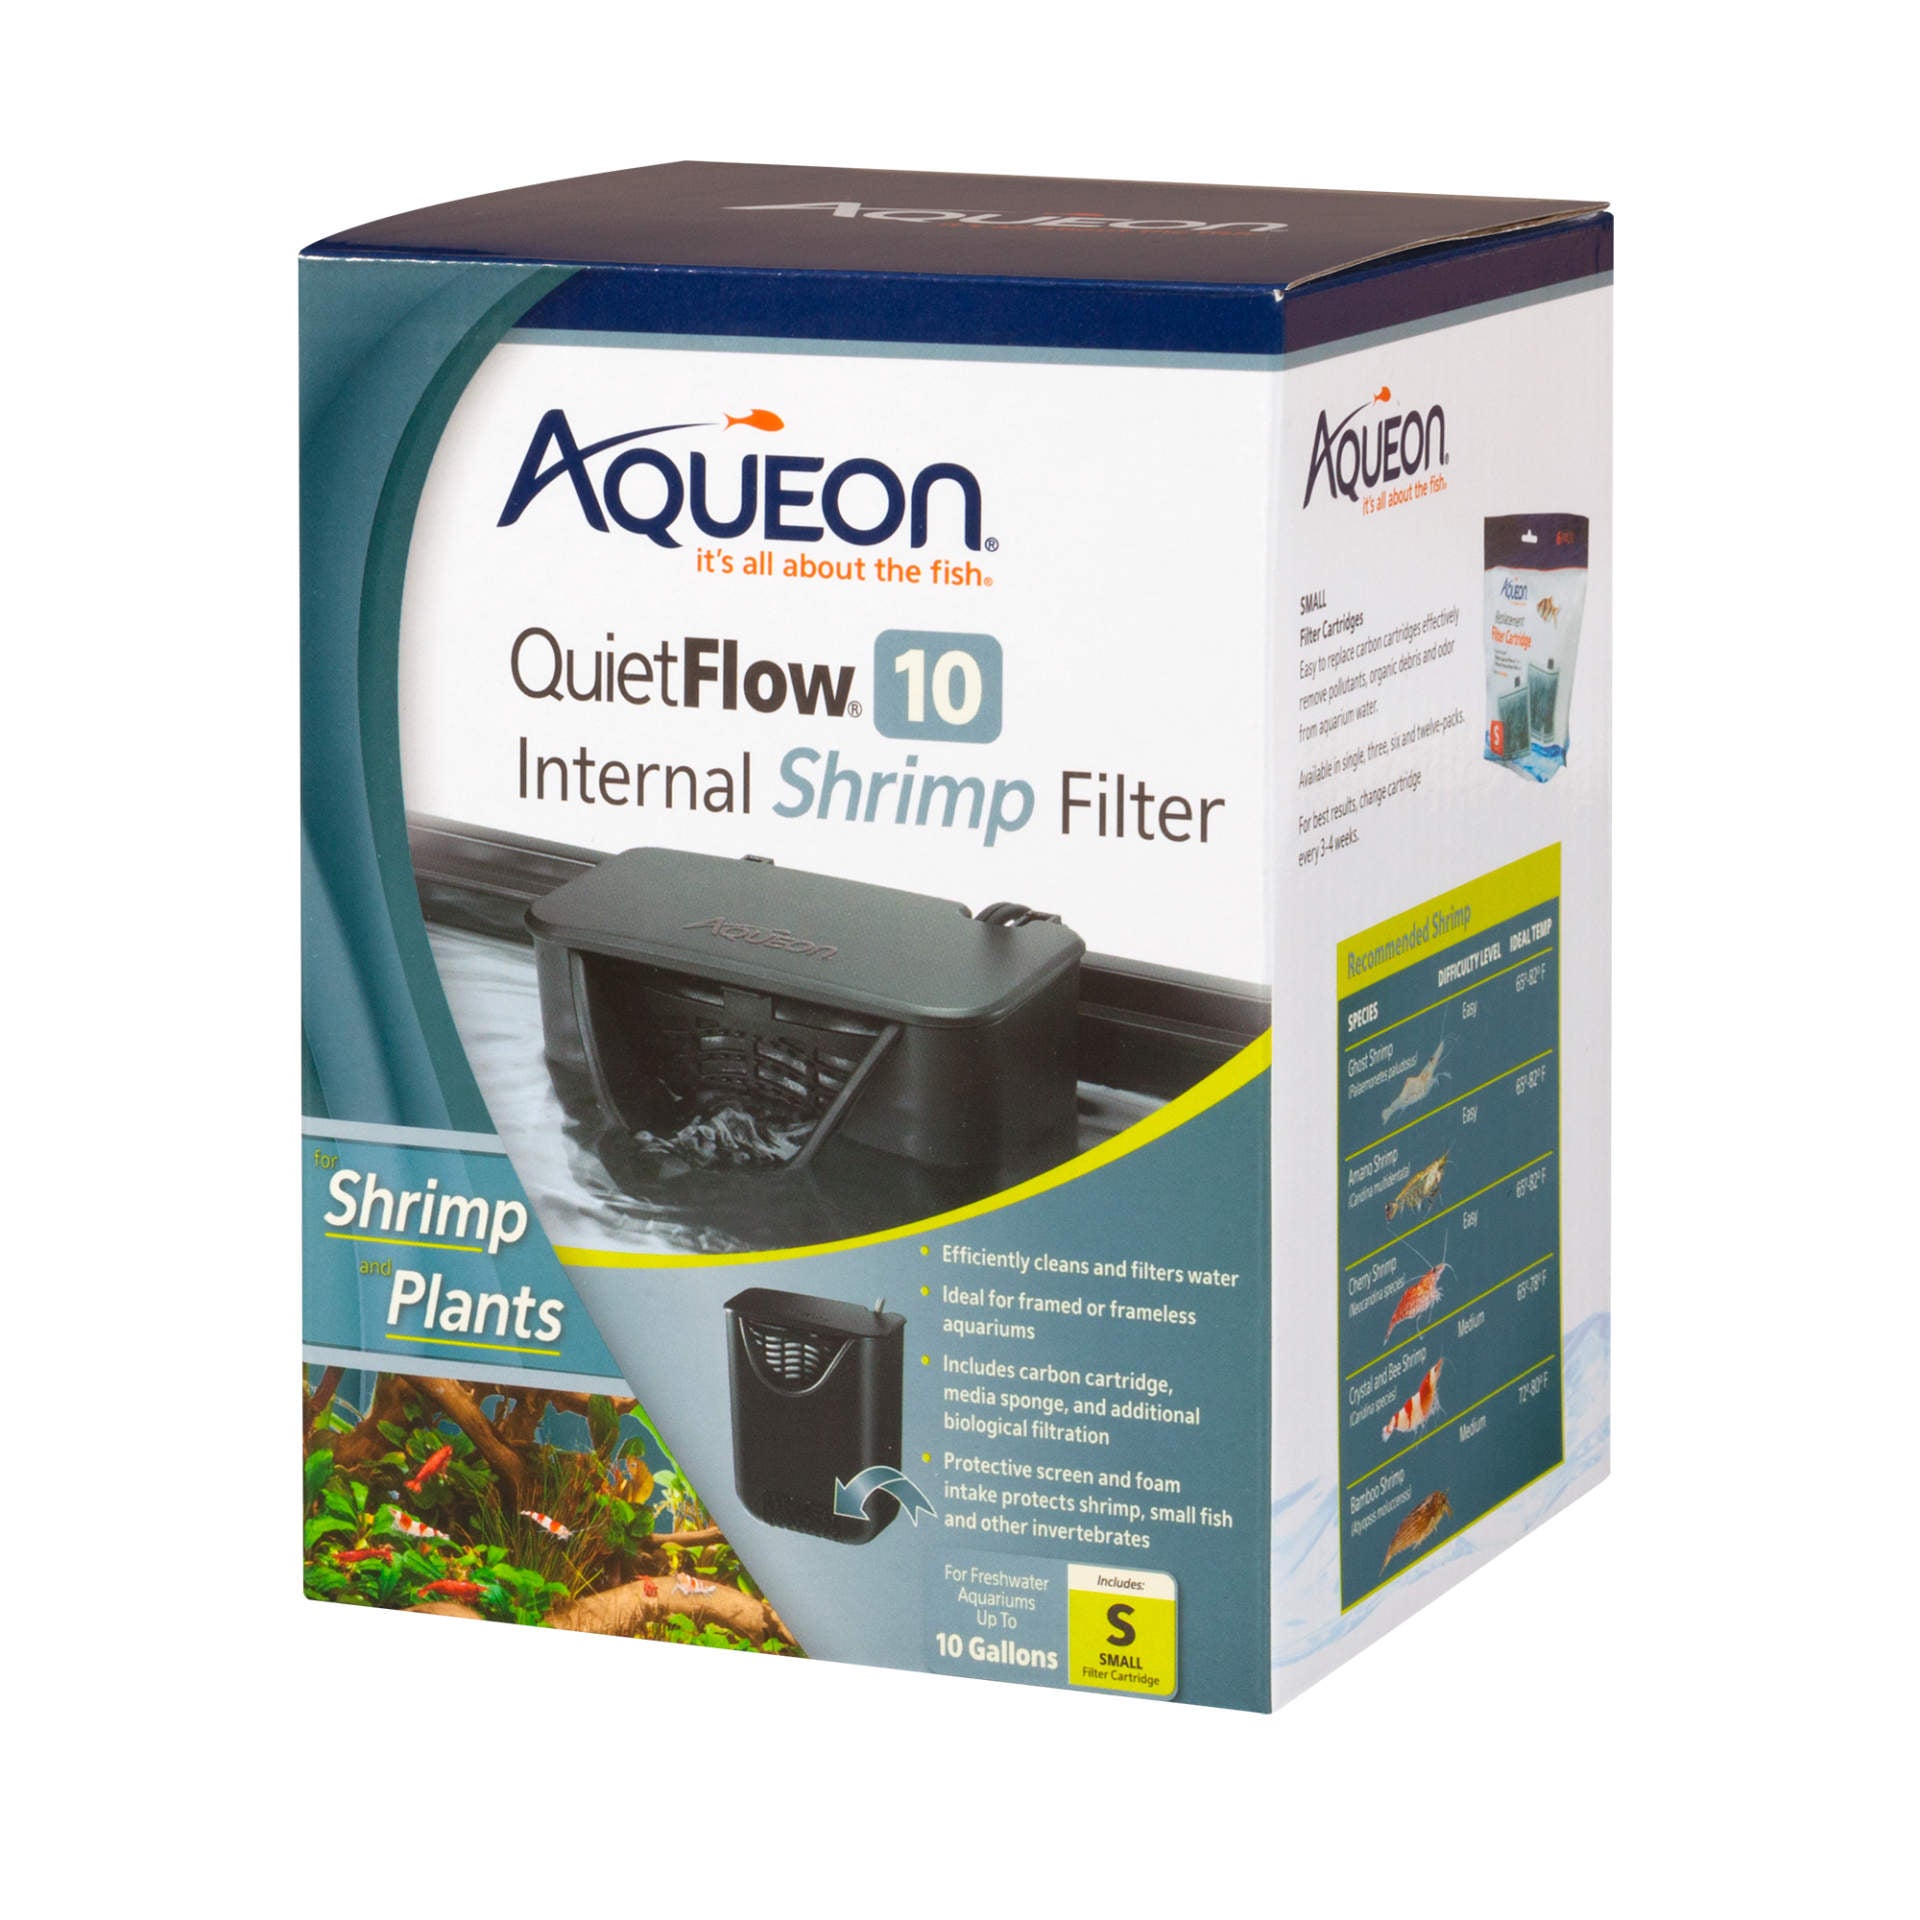 Aqueon QuietFlow Internal Shrimp Filter